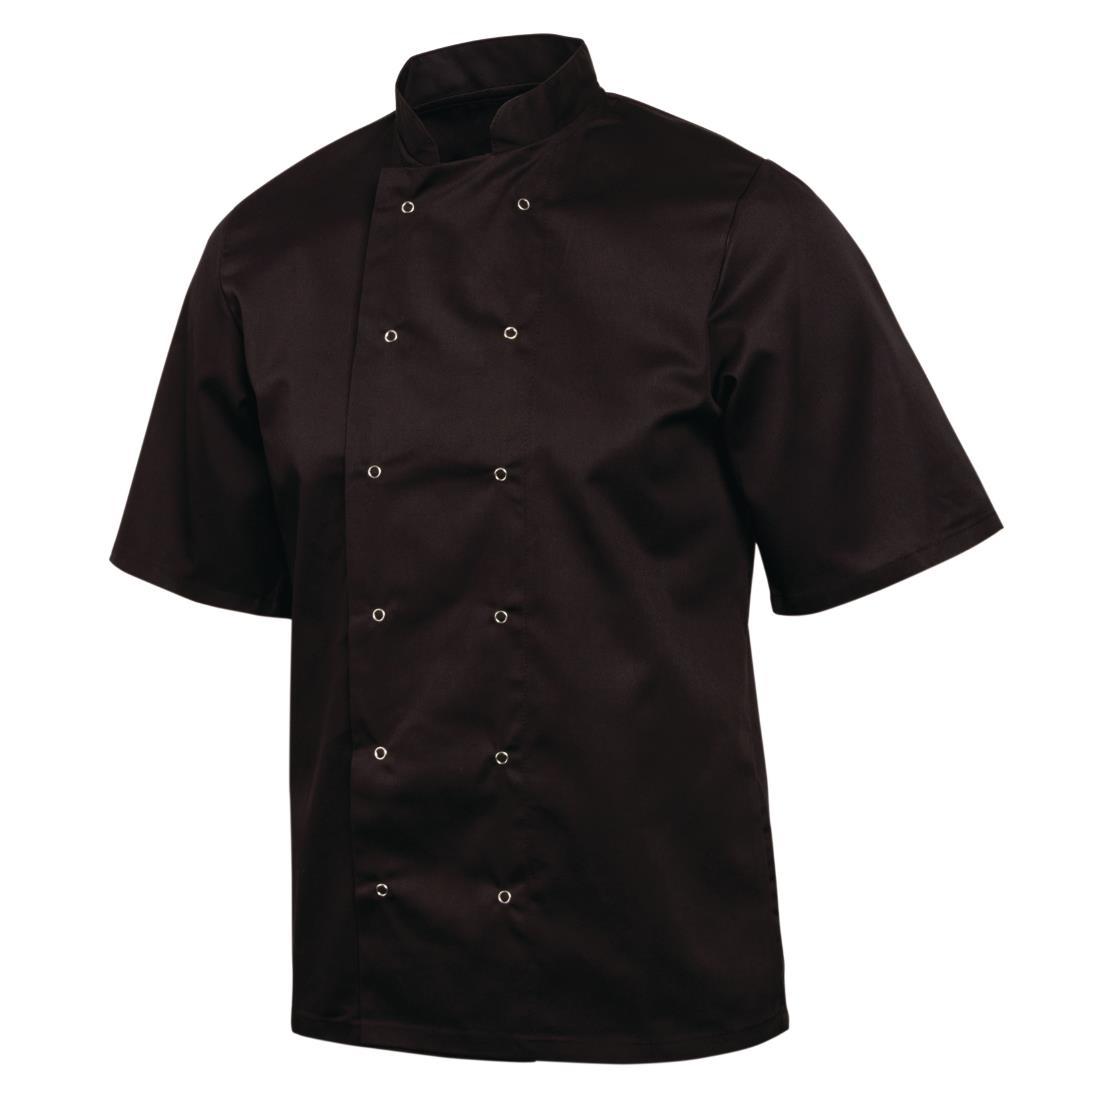 Whites Vegas Unisex Chefs Jacket Short Sleeve Black XS - A439-XS  - 5